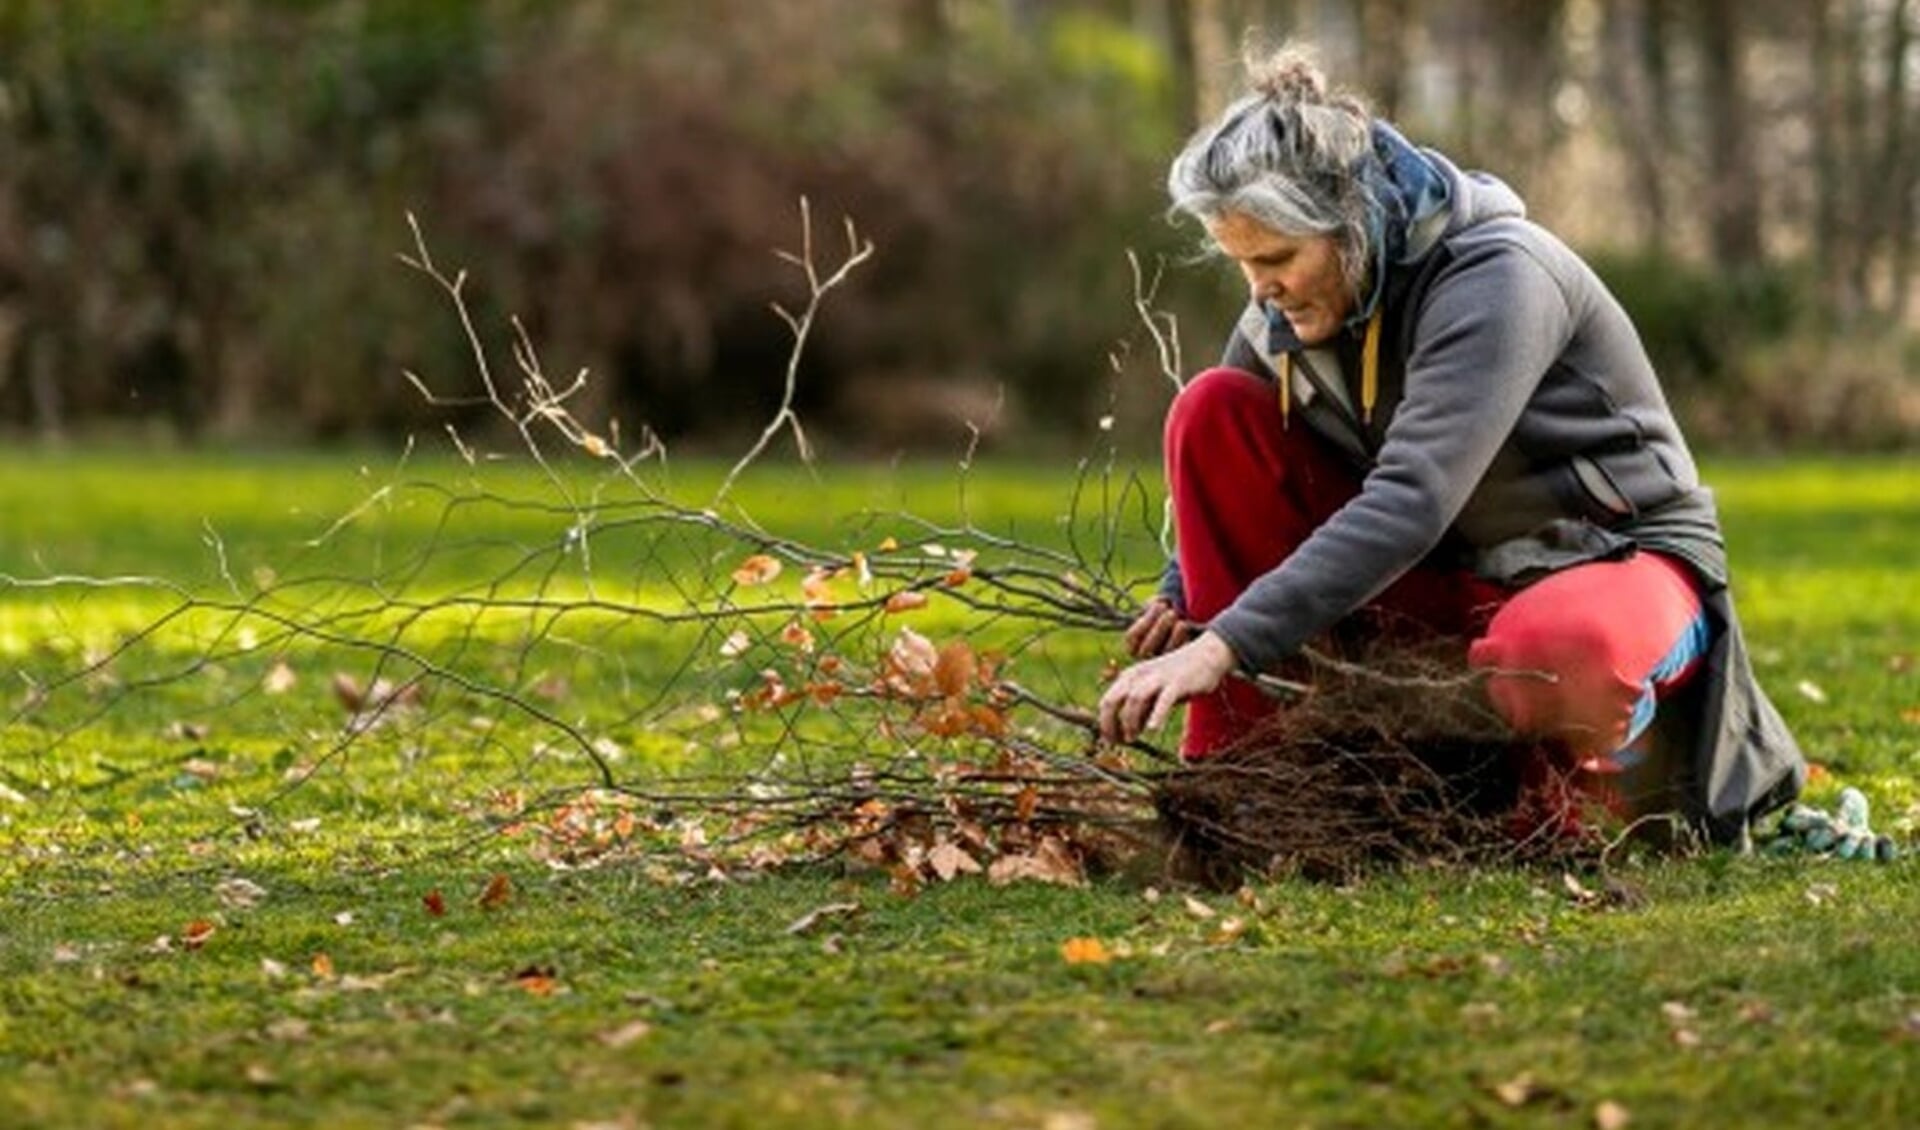 Meer Bomen Nu wil dit jaar 1 miljoen bomen planten in Nederland en zamelt hiervoor zaailingen en stekken in.